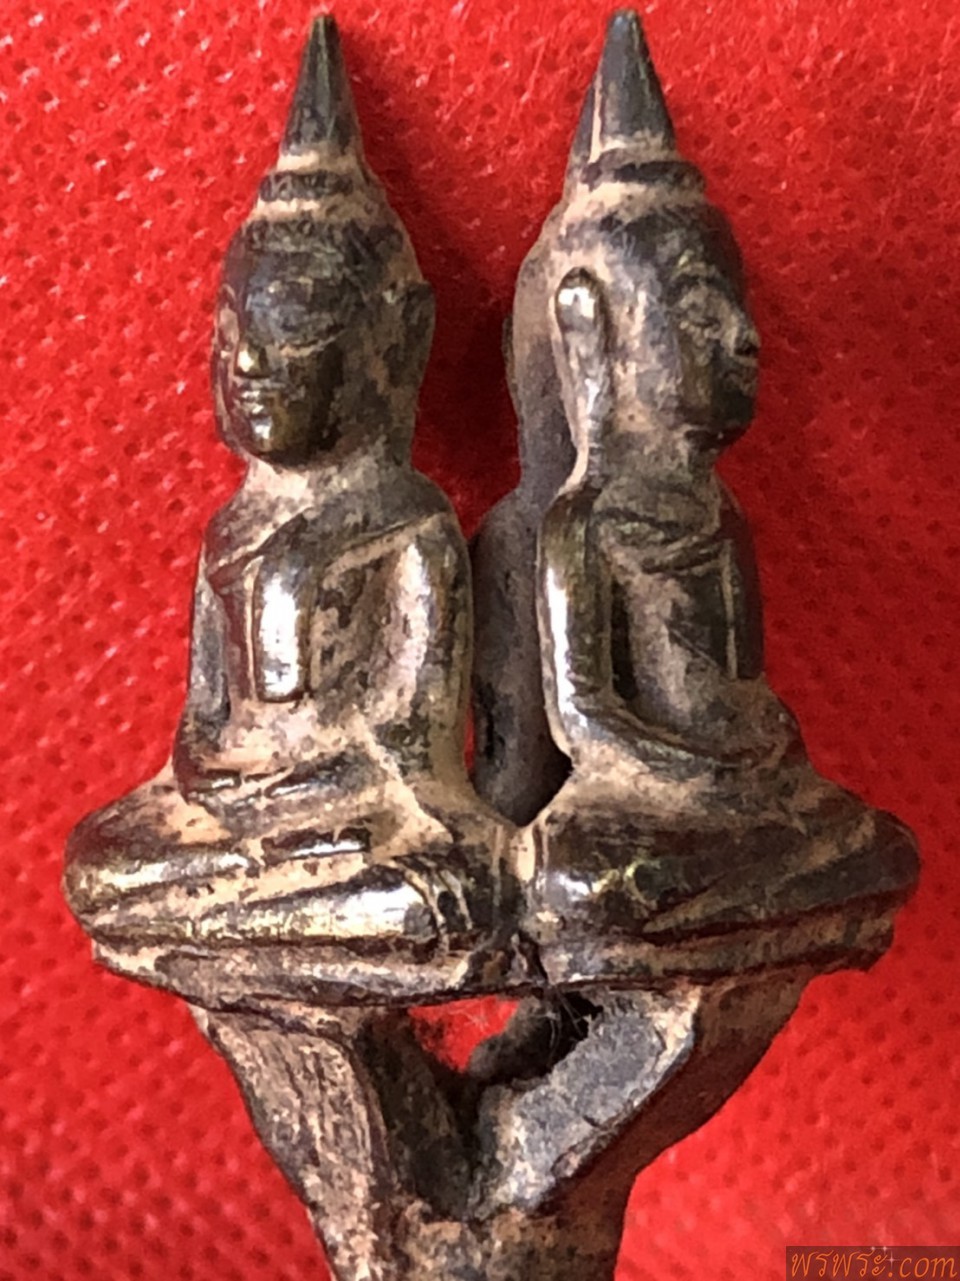 พระยอดธง4องค์ ปางสมาธิ เนื้อสัมฤทธิ์เก่าๆ ก่อนปี2500/พบ1ช่อ4องค์ ณ.วันที่20/02/2564/Phra Yod Thong, 4 Buddha images, meditation posture, old bronze Before the year 2500 / found 1 bouquet of 4 pieces As of 20/02/2564